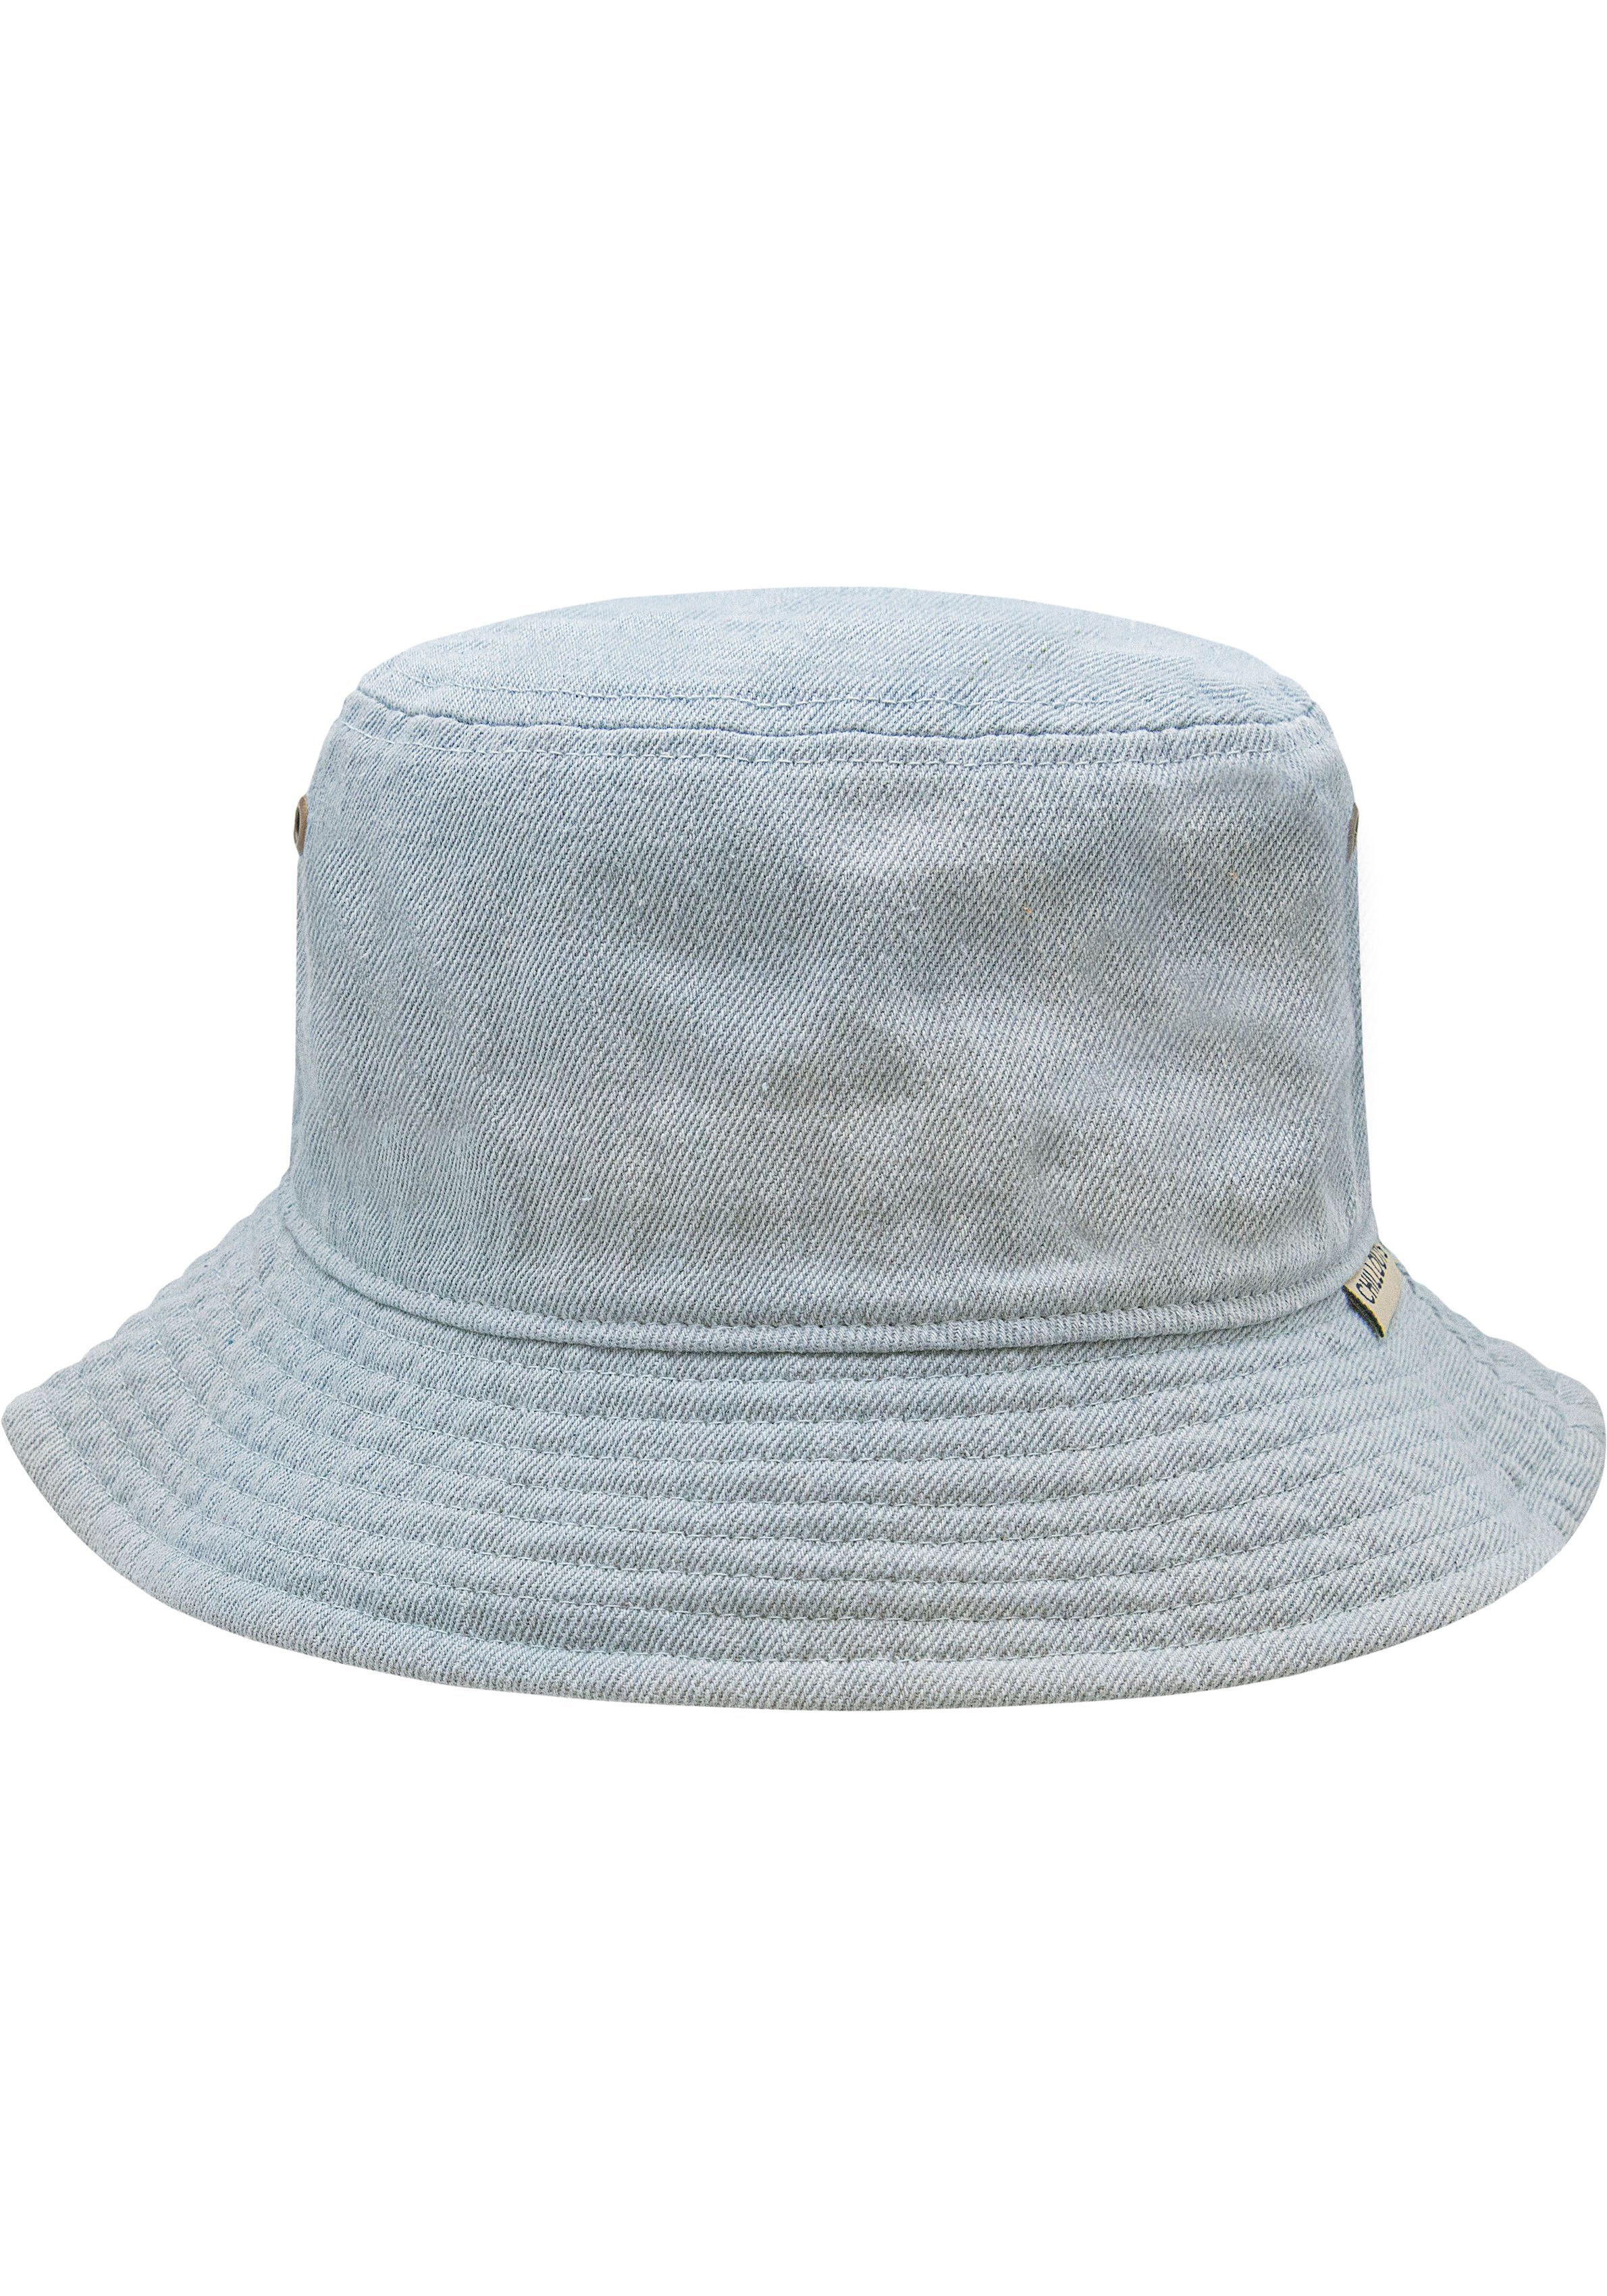 chillouts Fischerhut hellblau Braga Hat